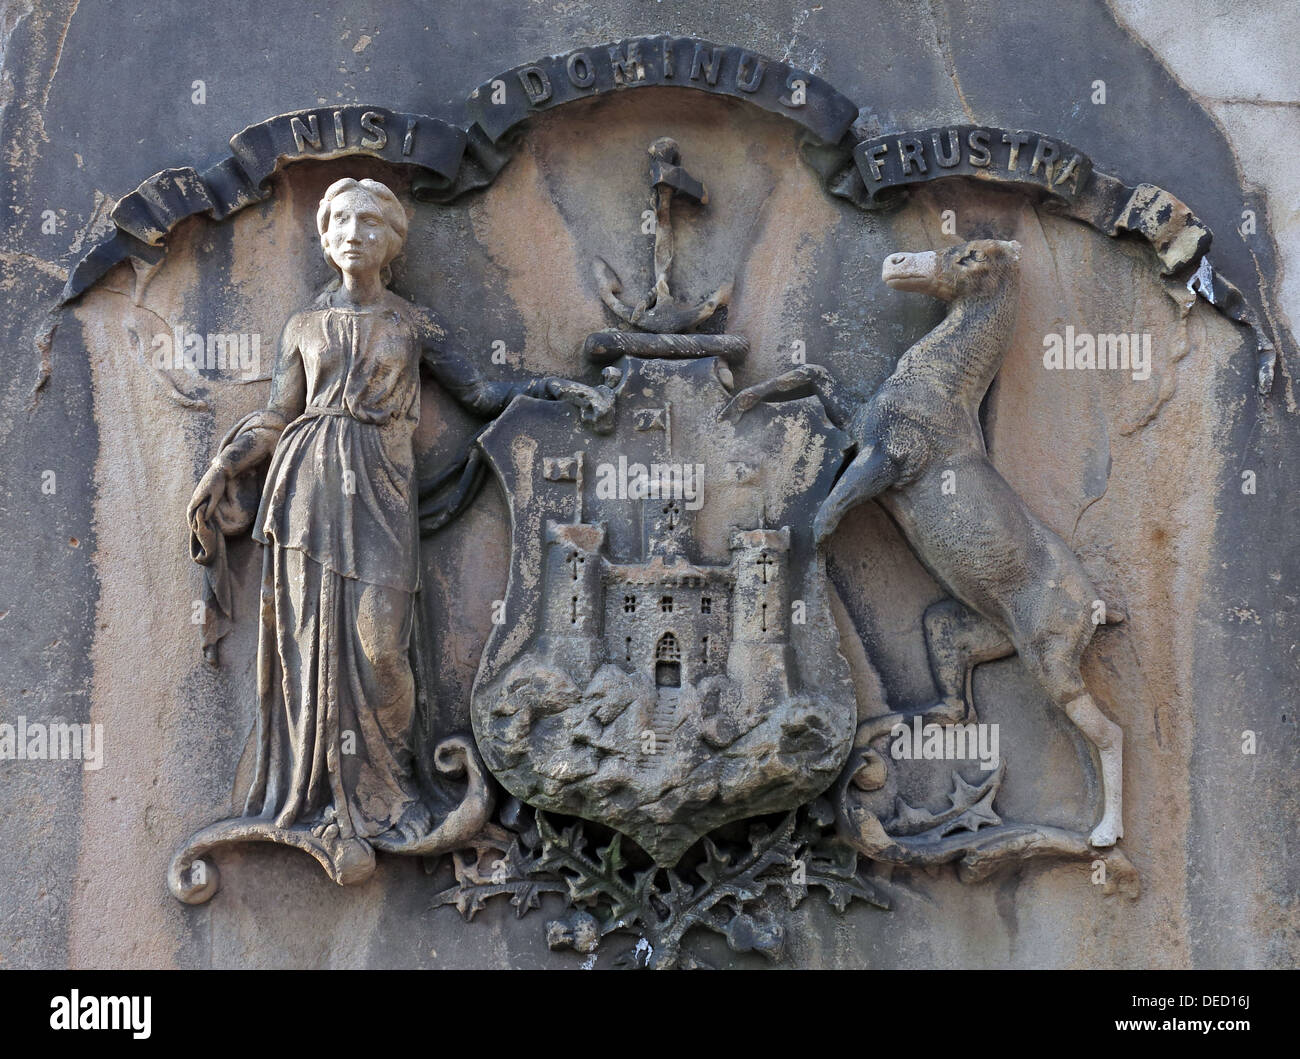 Nisi Dominus Frustra, das Wappen von Edinburgh, am steinernen Brunnen der Stadt, Schottland Stockfoto